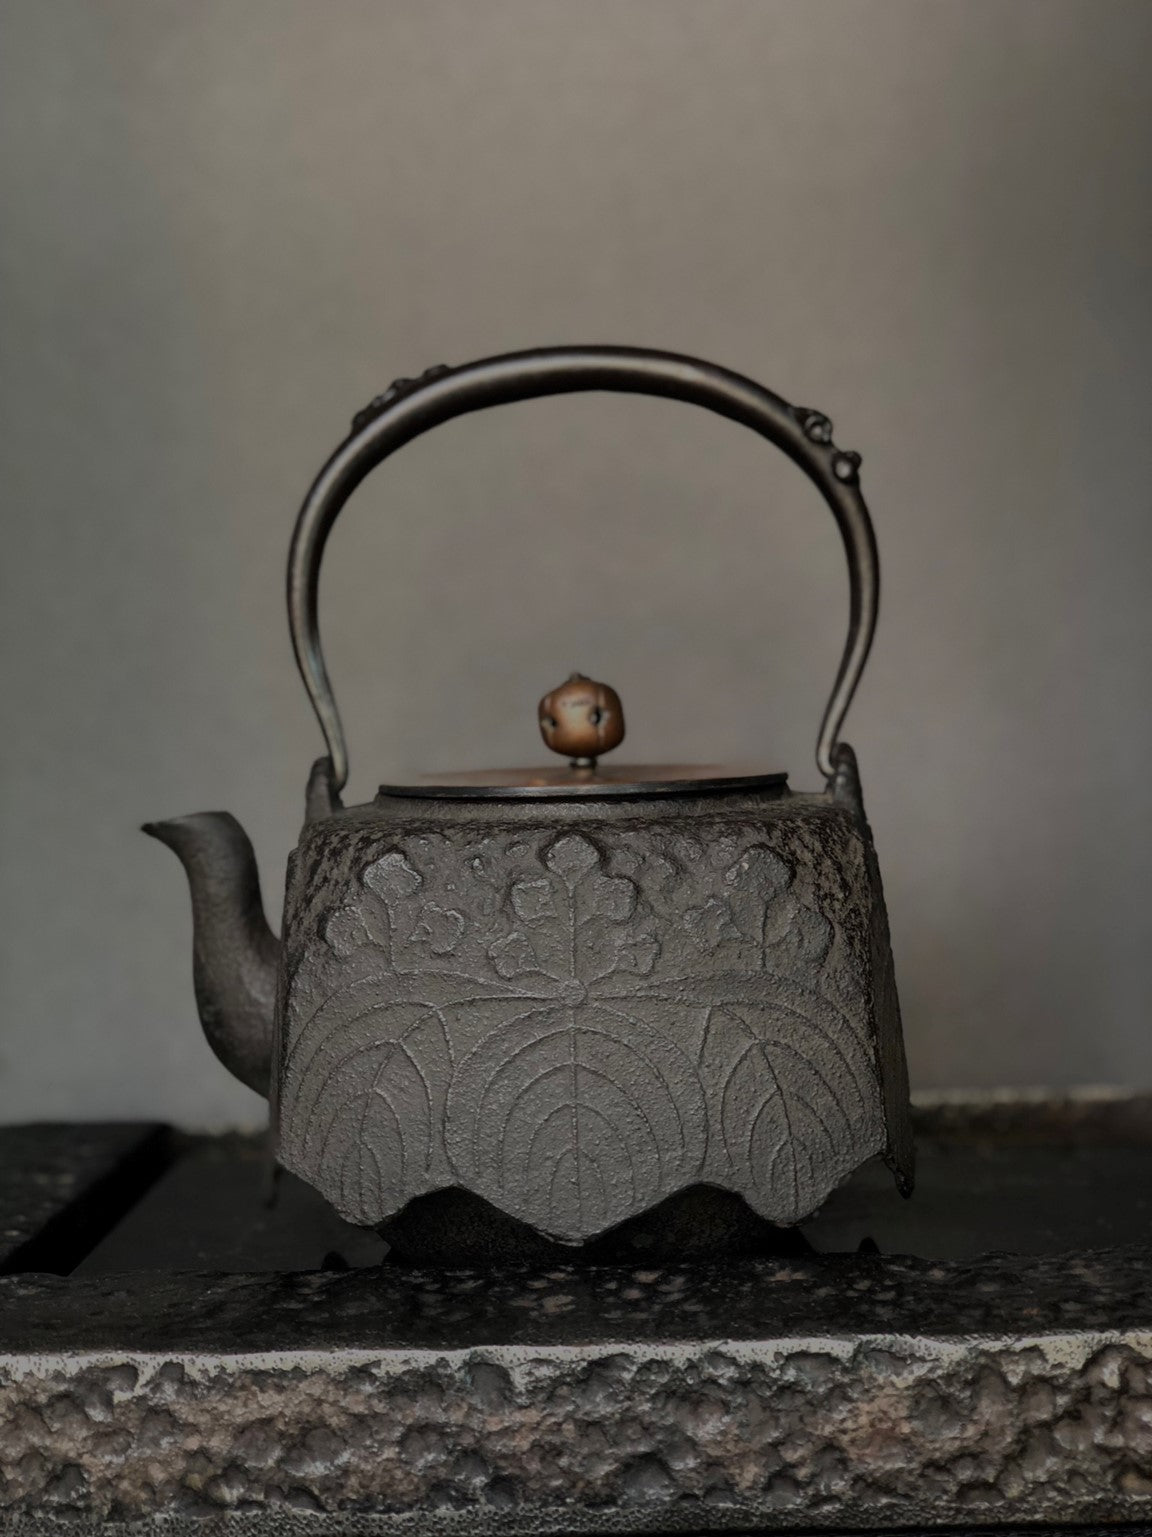 11 - 龍文堂四方尾垂型鐵壺– Tea Treasures